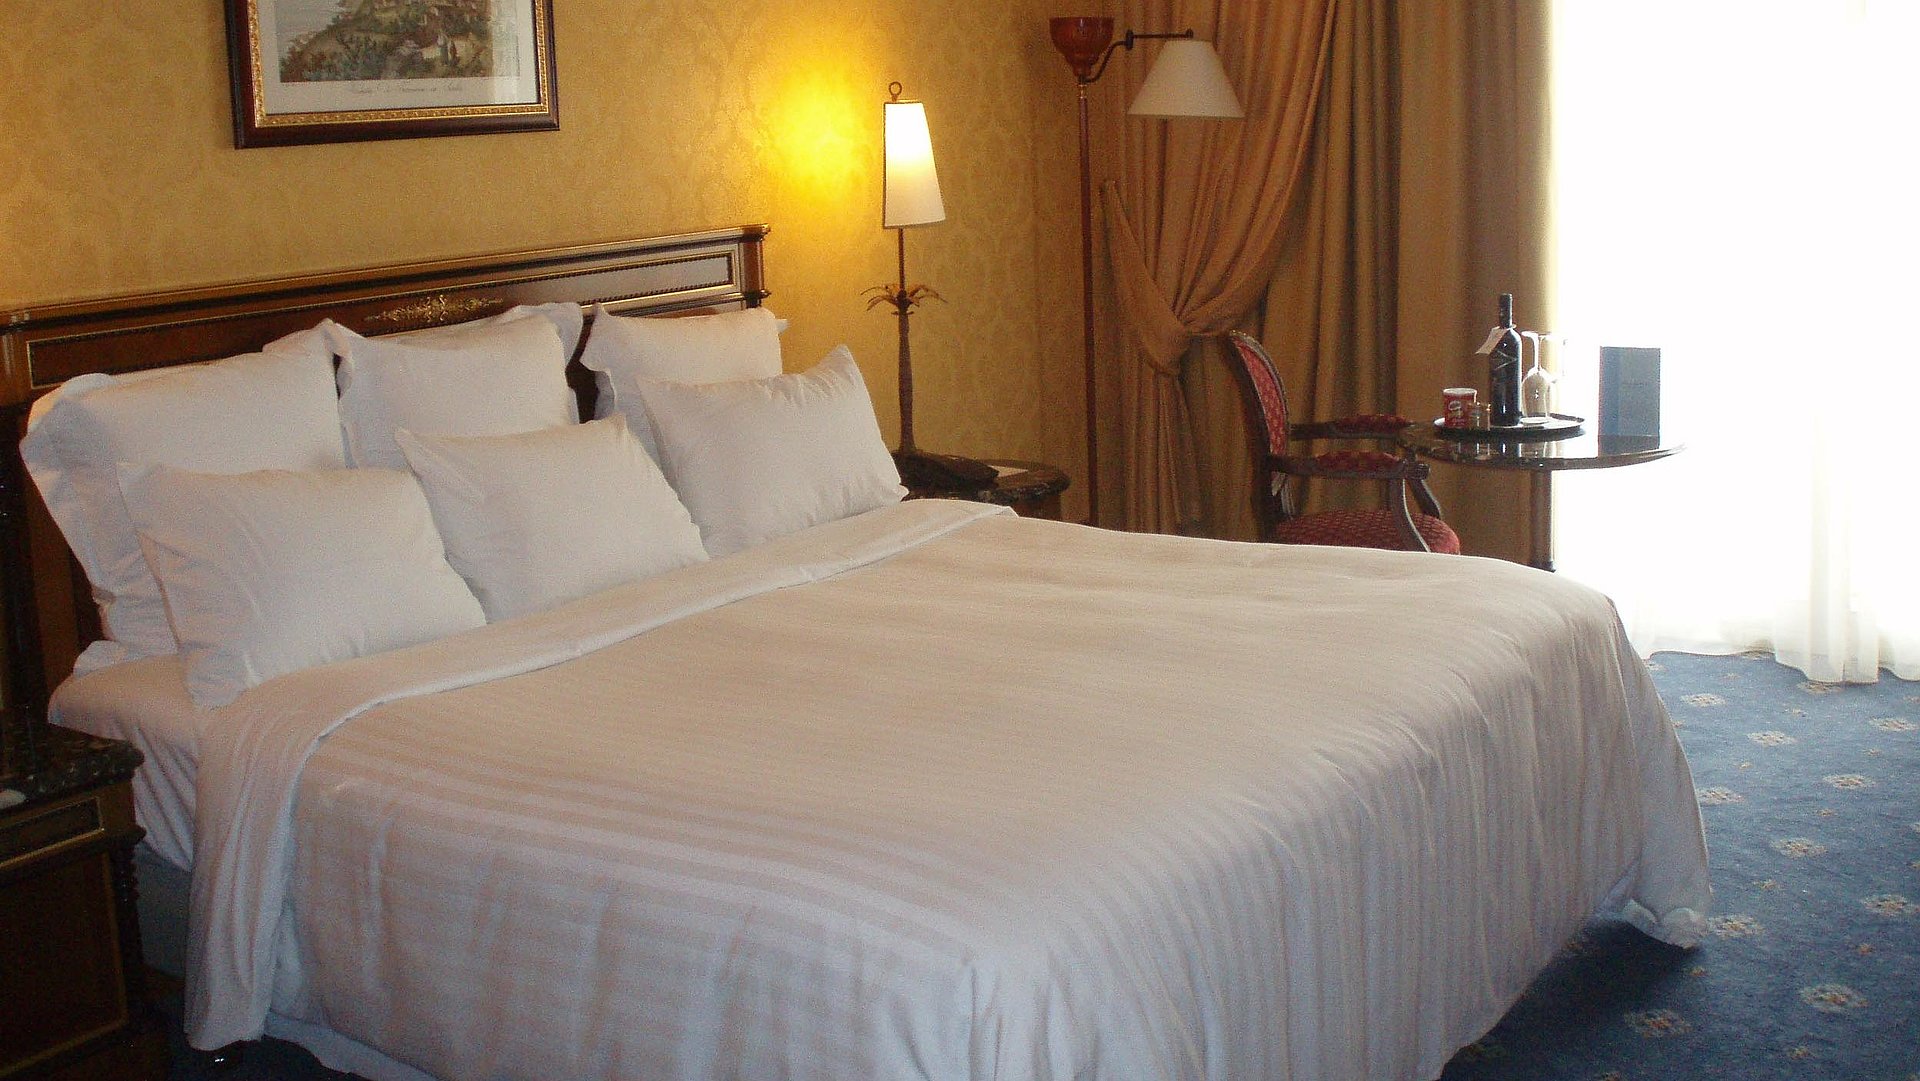 Übernachten Video in Ostbayern - sehr ordentliches Hotelzimmer mit großem Bett, warmer Nachtlampe und mittelgroßem Wandgemälde